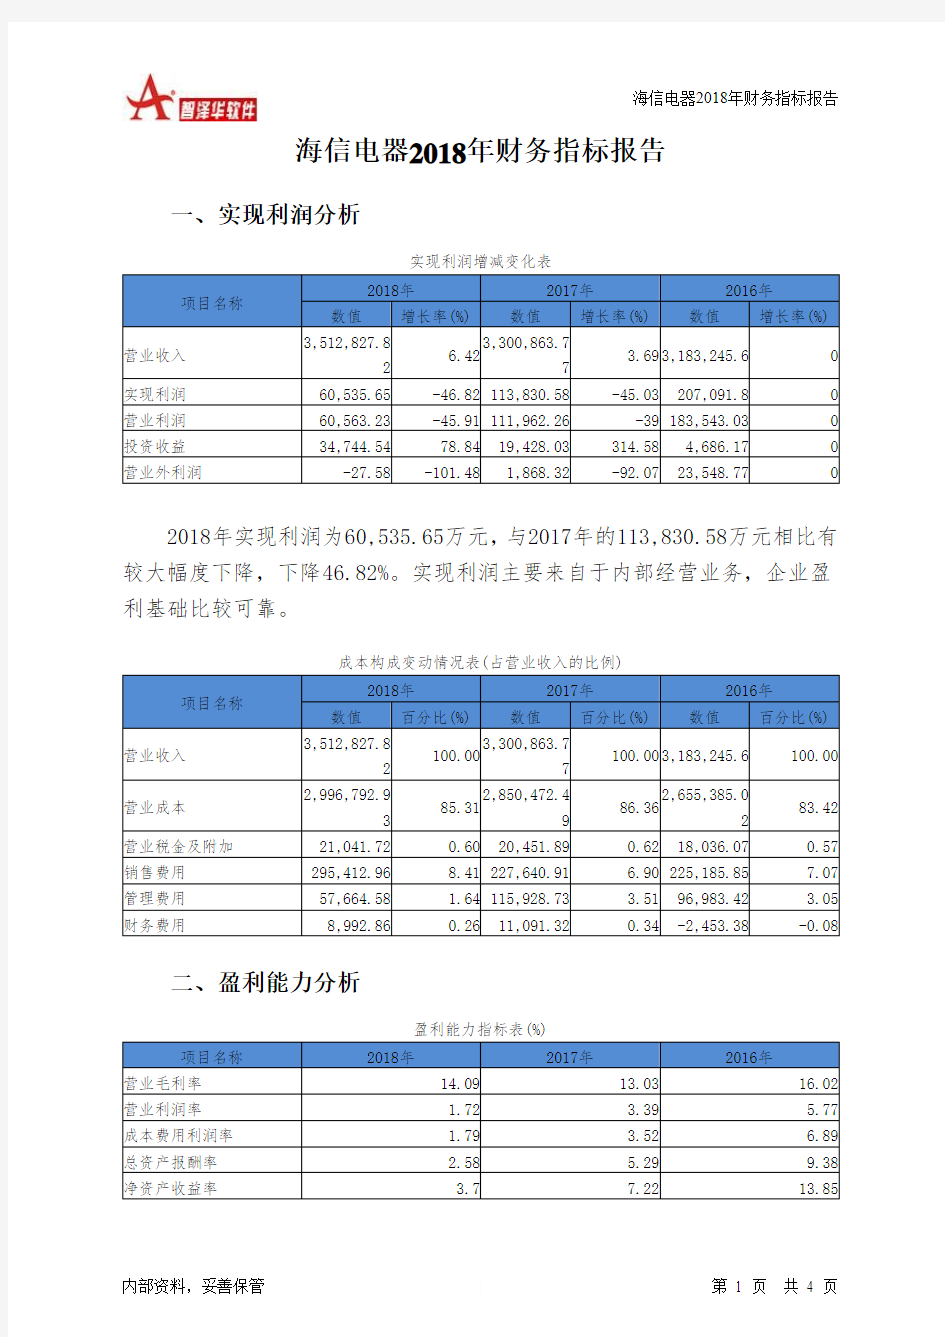 海信电器2018年财务指标报告-智泽华